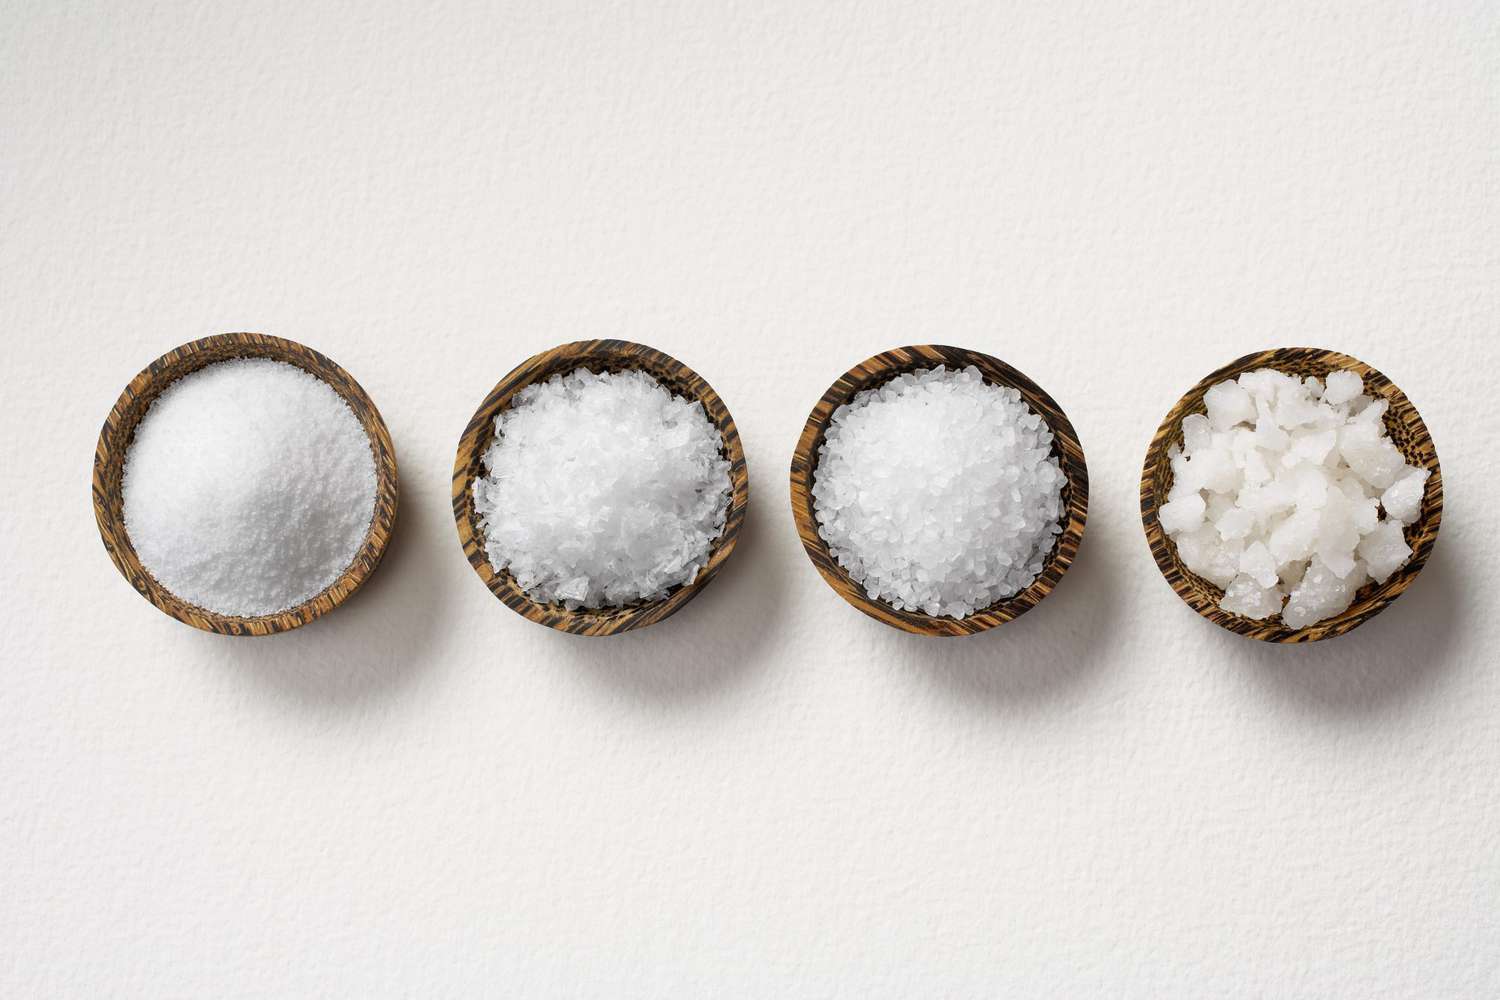 Table Salt vs. Sea Salt vs. Kosher Salt: What's the Difference? | Allrecipes